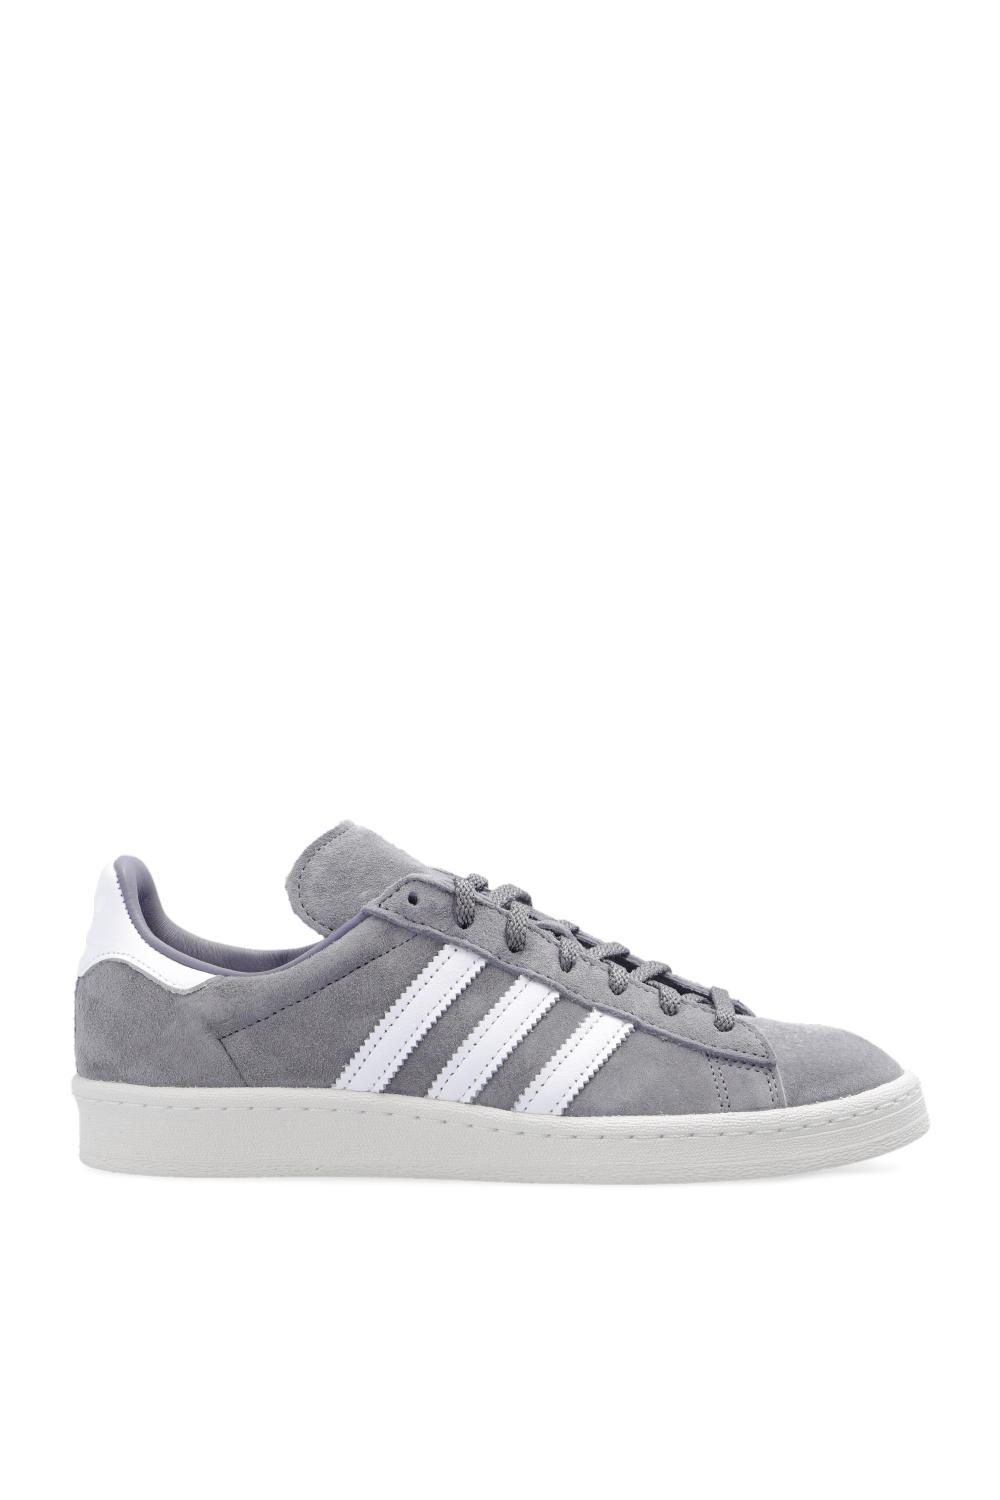 adidas Originals Suede 'campus 80s' Sneakers in Grey (Gray) | Lyst